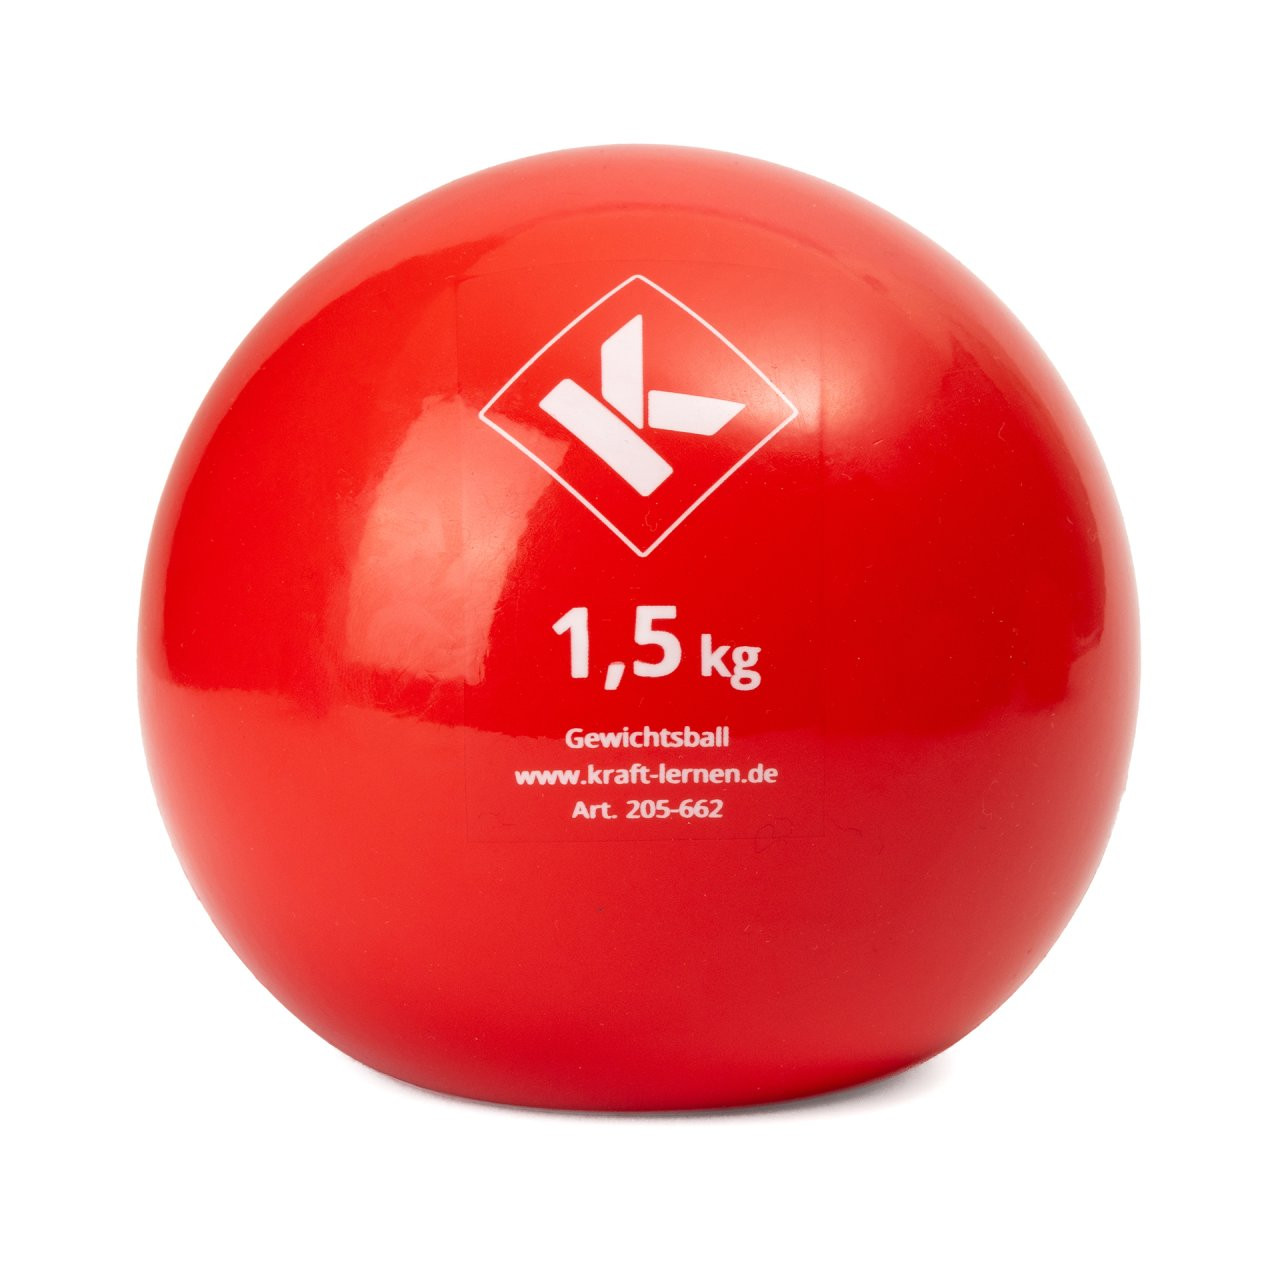 Gewichtsball, 1.0 kg, 1.5 kg, 2.0 kg